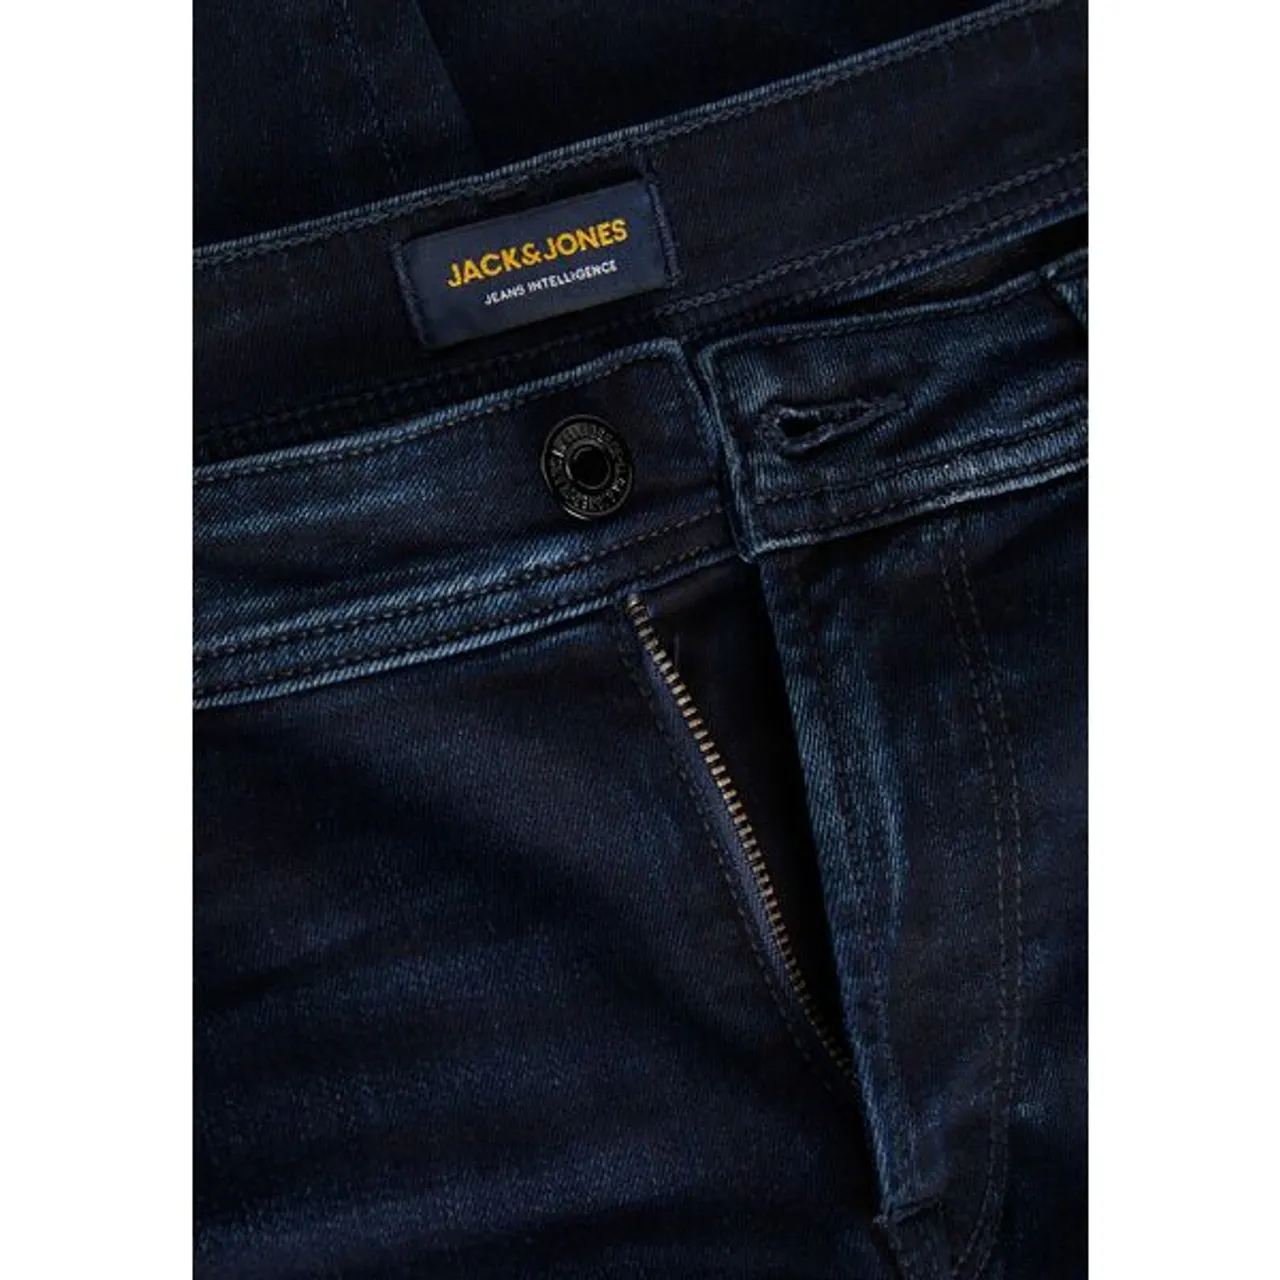 Slim-fit-Jeans JACK & JONES "JJ JJITIM JJORIGINAL AGI 116" Gr. 28, Länge 32, blau (dunkelblue denim) Herren Jeans Slim Fit